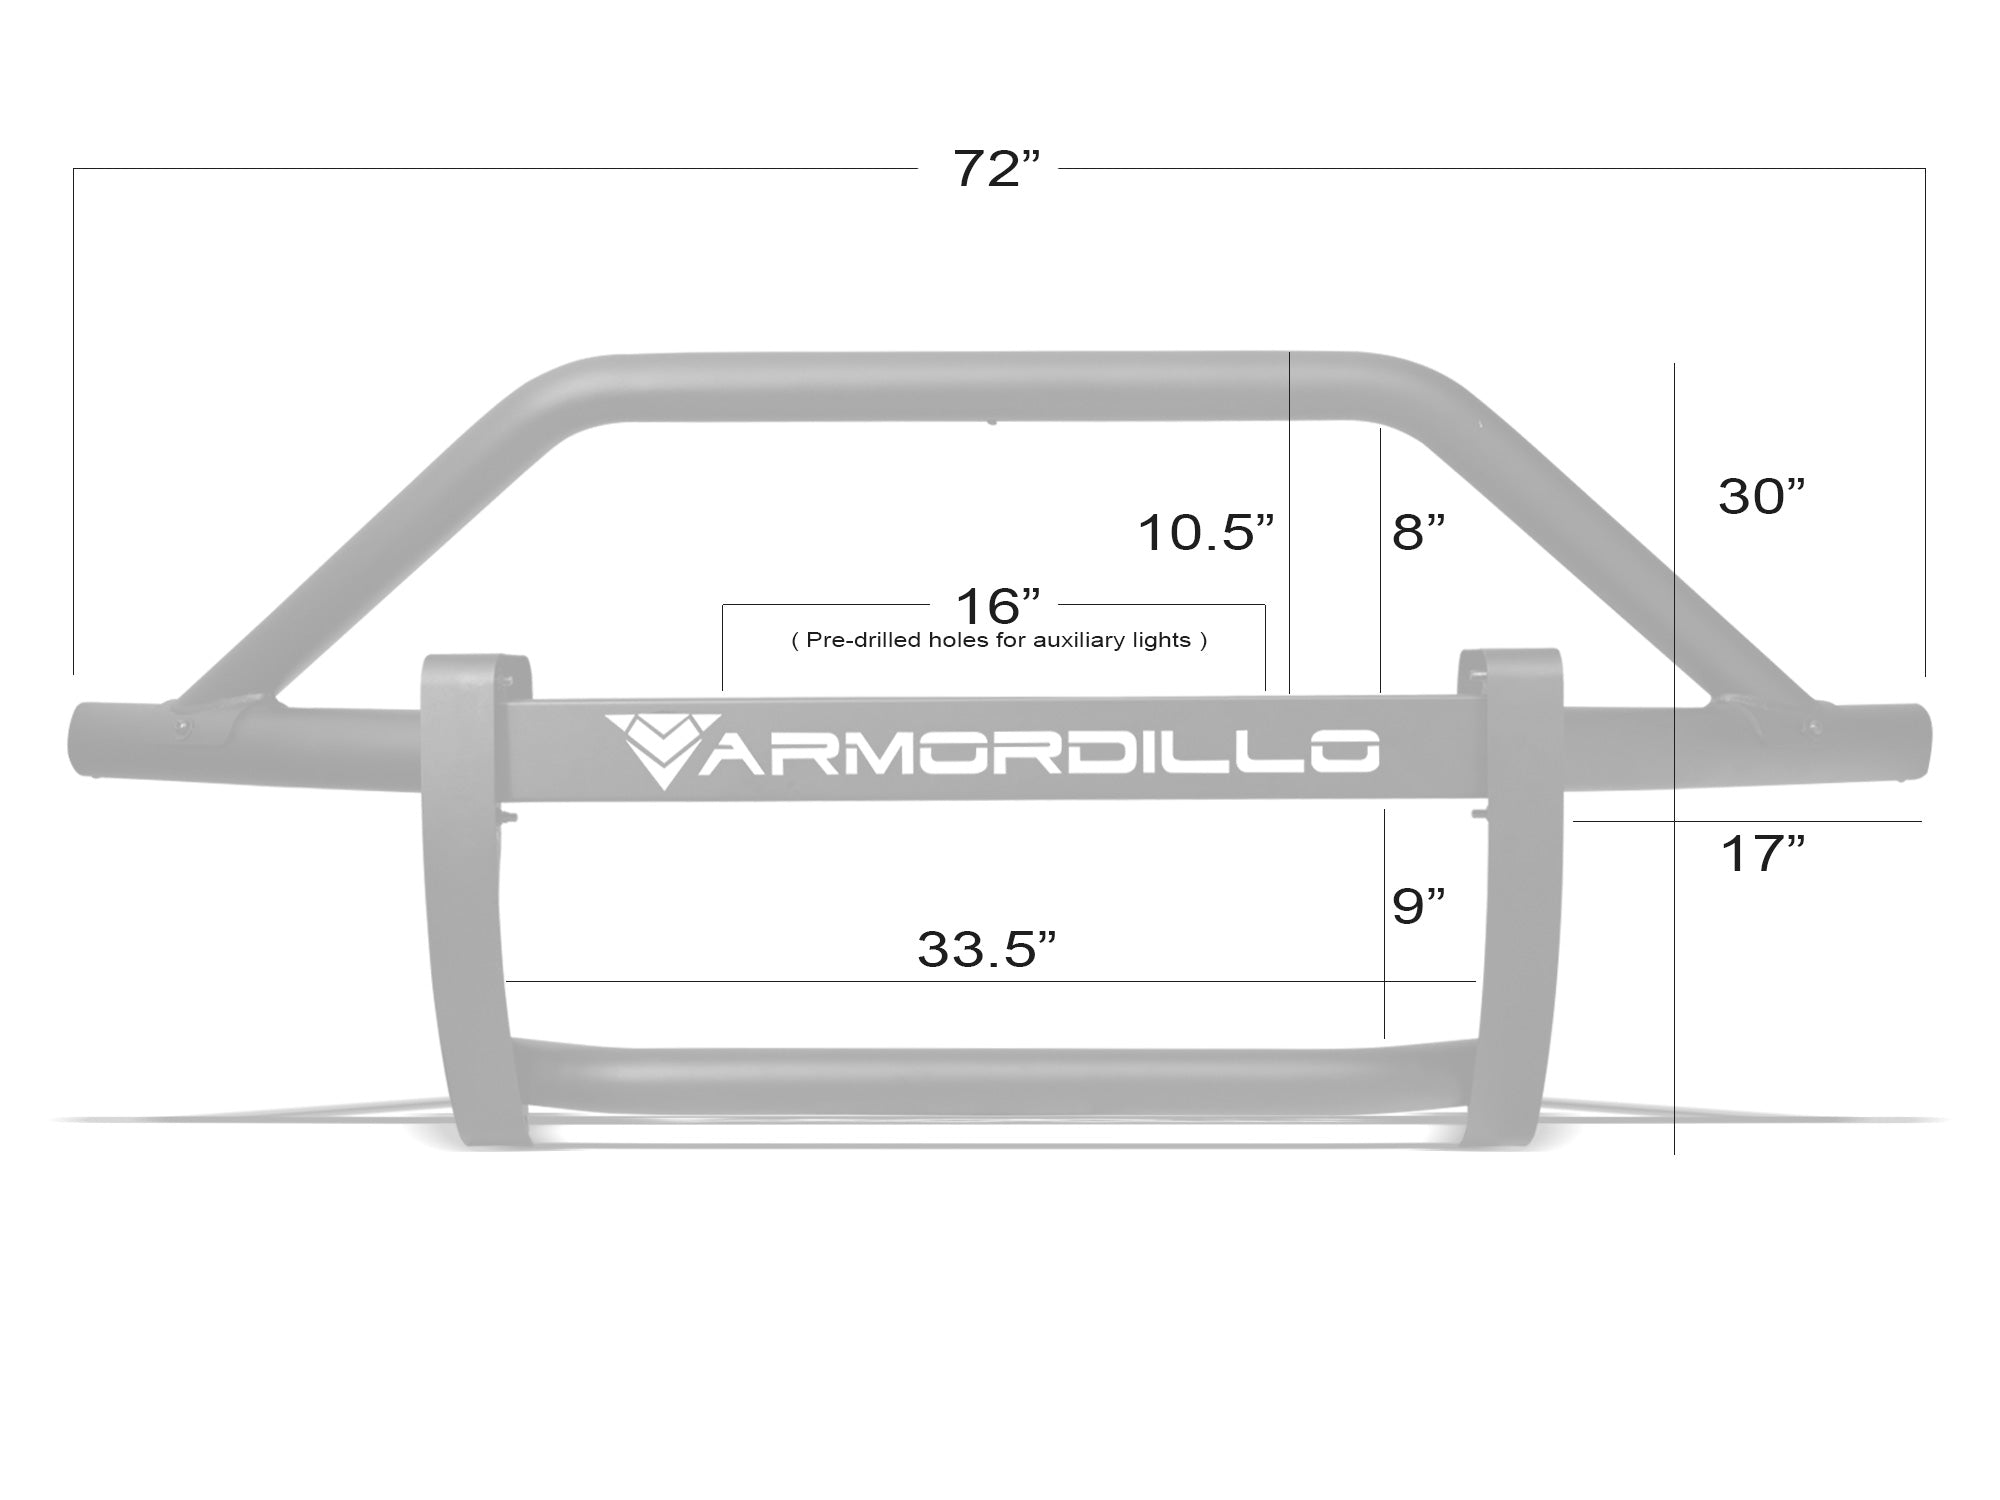 Armordillo 2020-2022 Chevy Silverado 2500/3500 AR Pre-Runner Guard